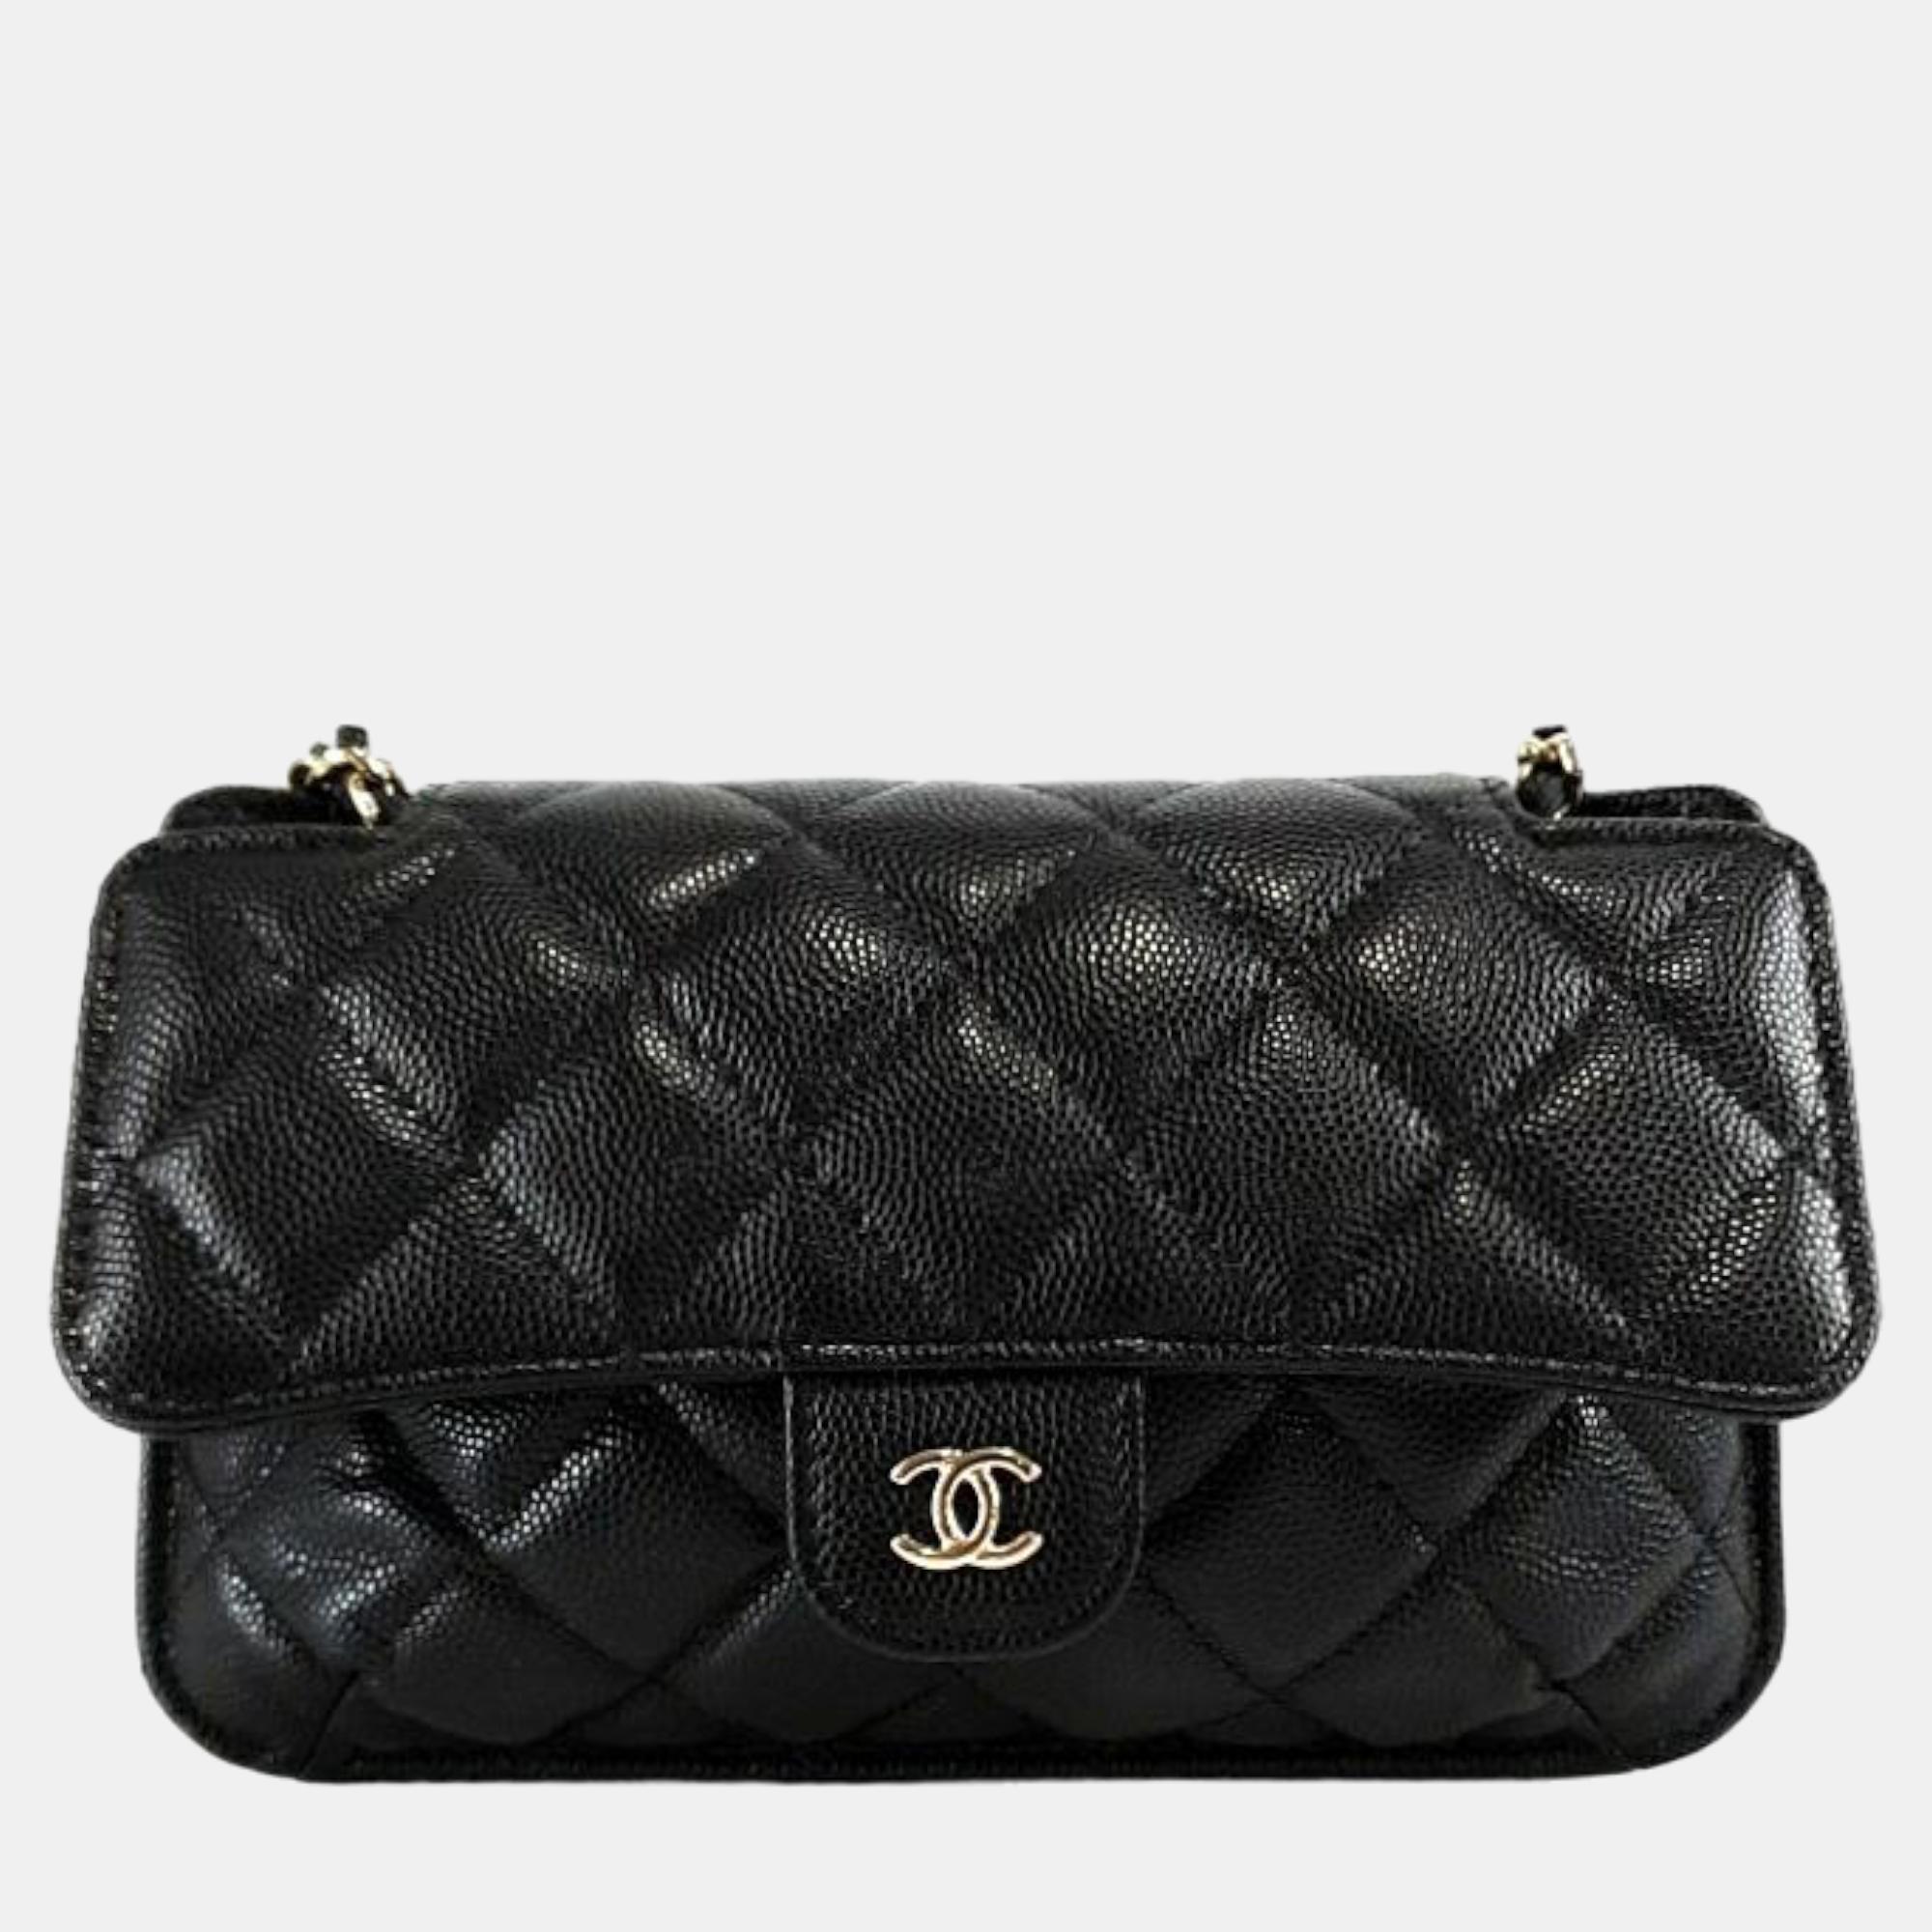 Chanel Black Leather Foldable Chain Shoulder Bag